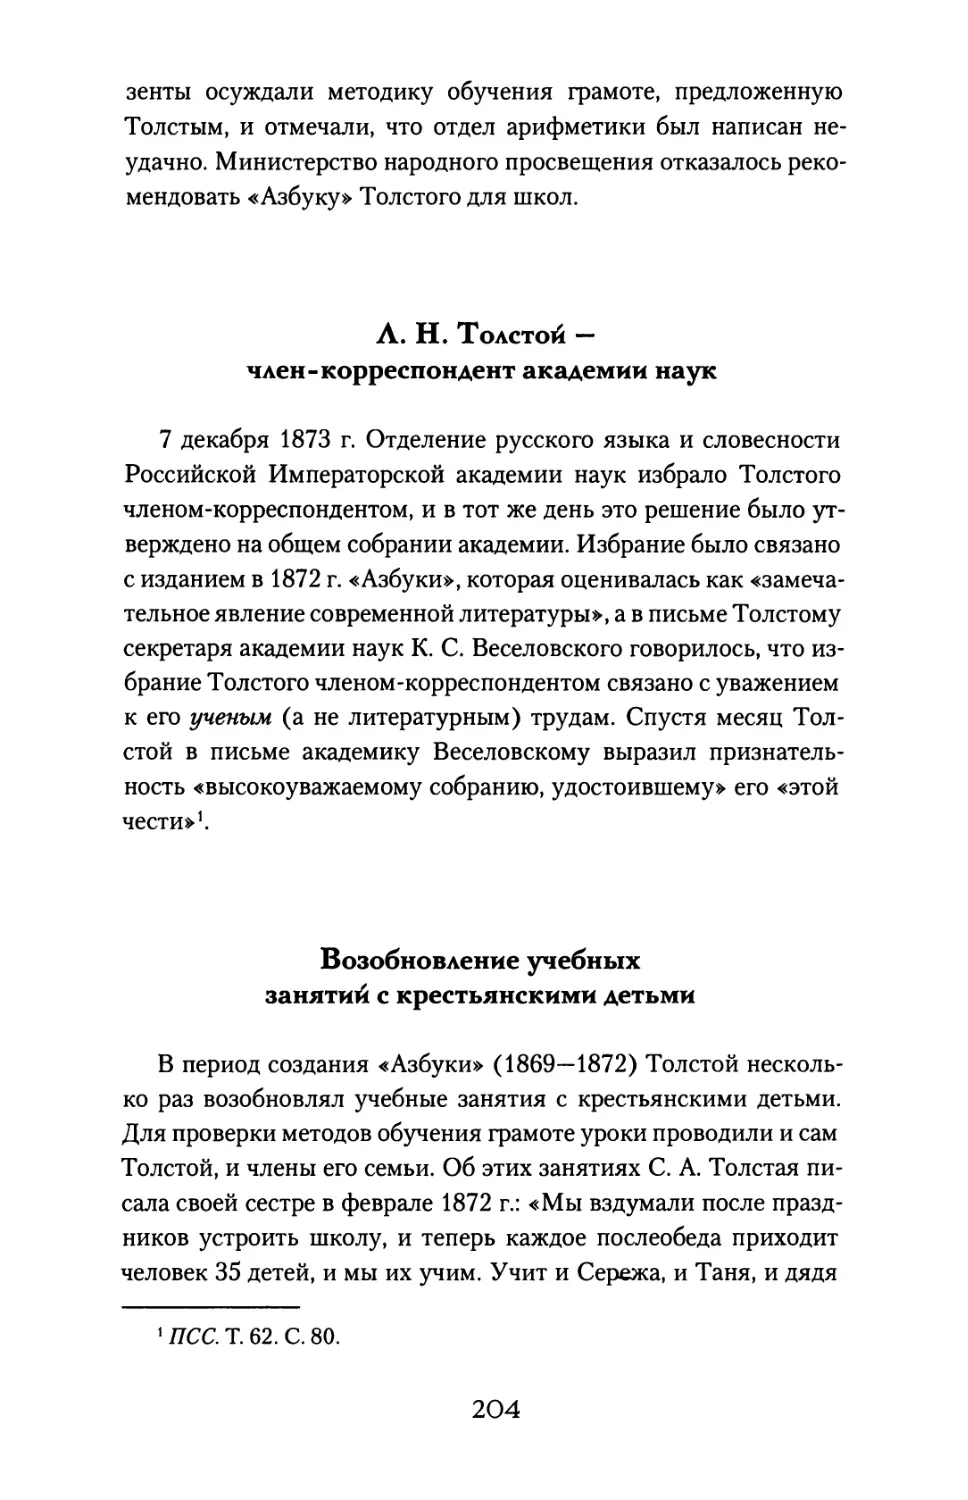 Л. Н. Толстой — член-корреспондент академии наук
Возобновление учебных занятий с крестьянскими детьми